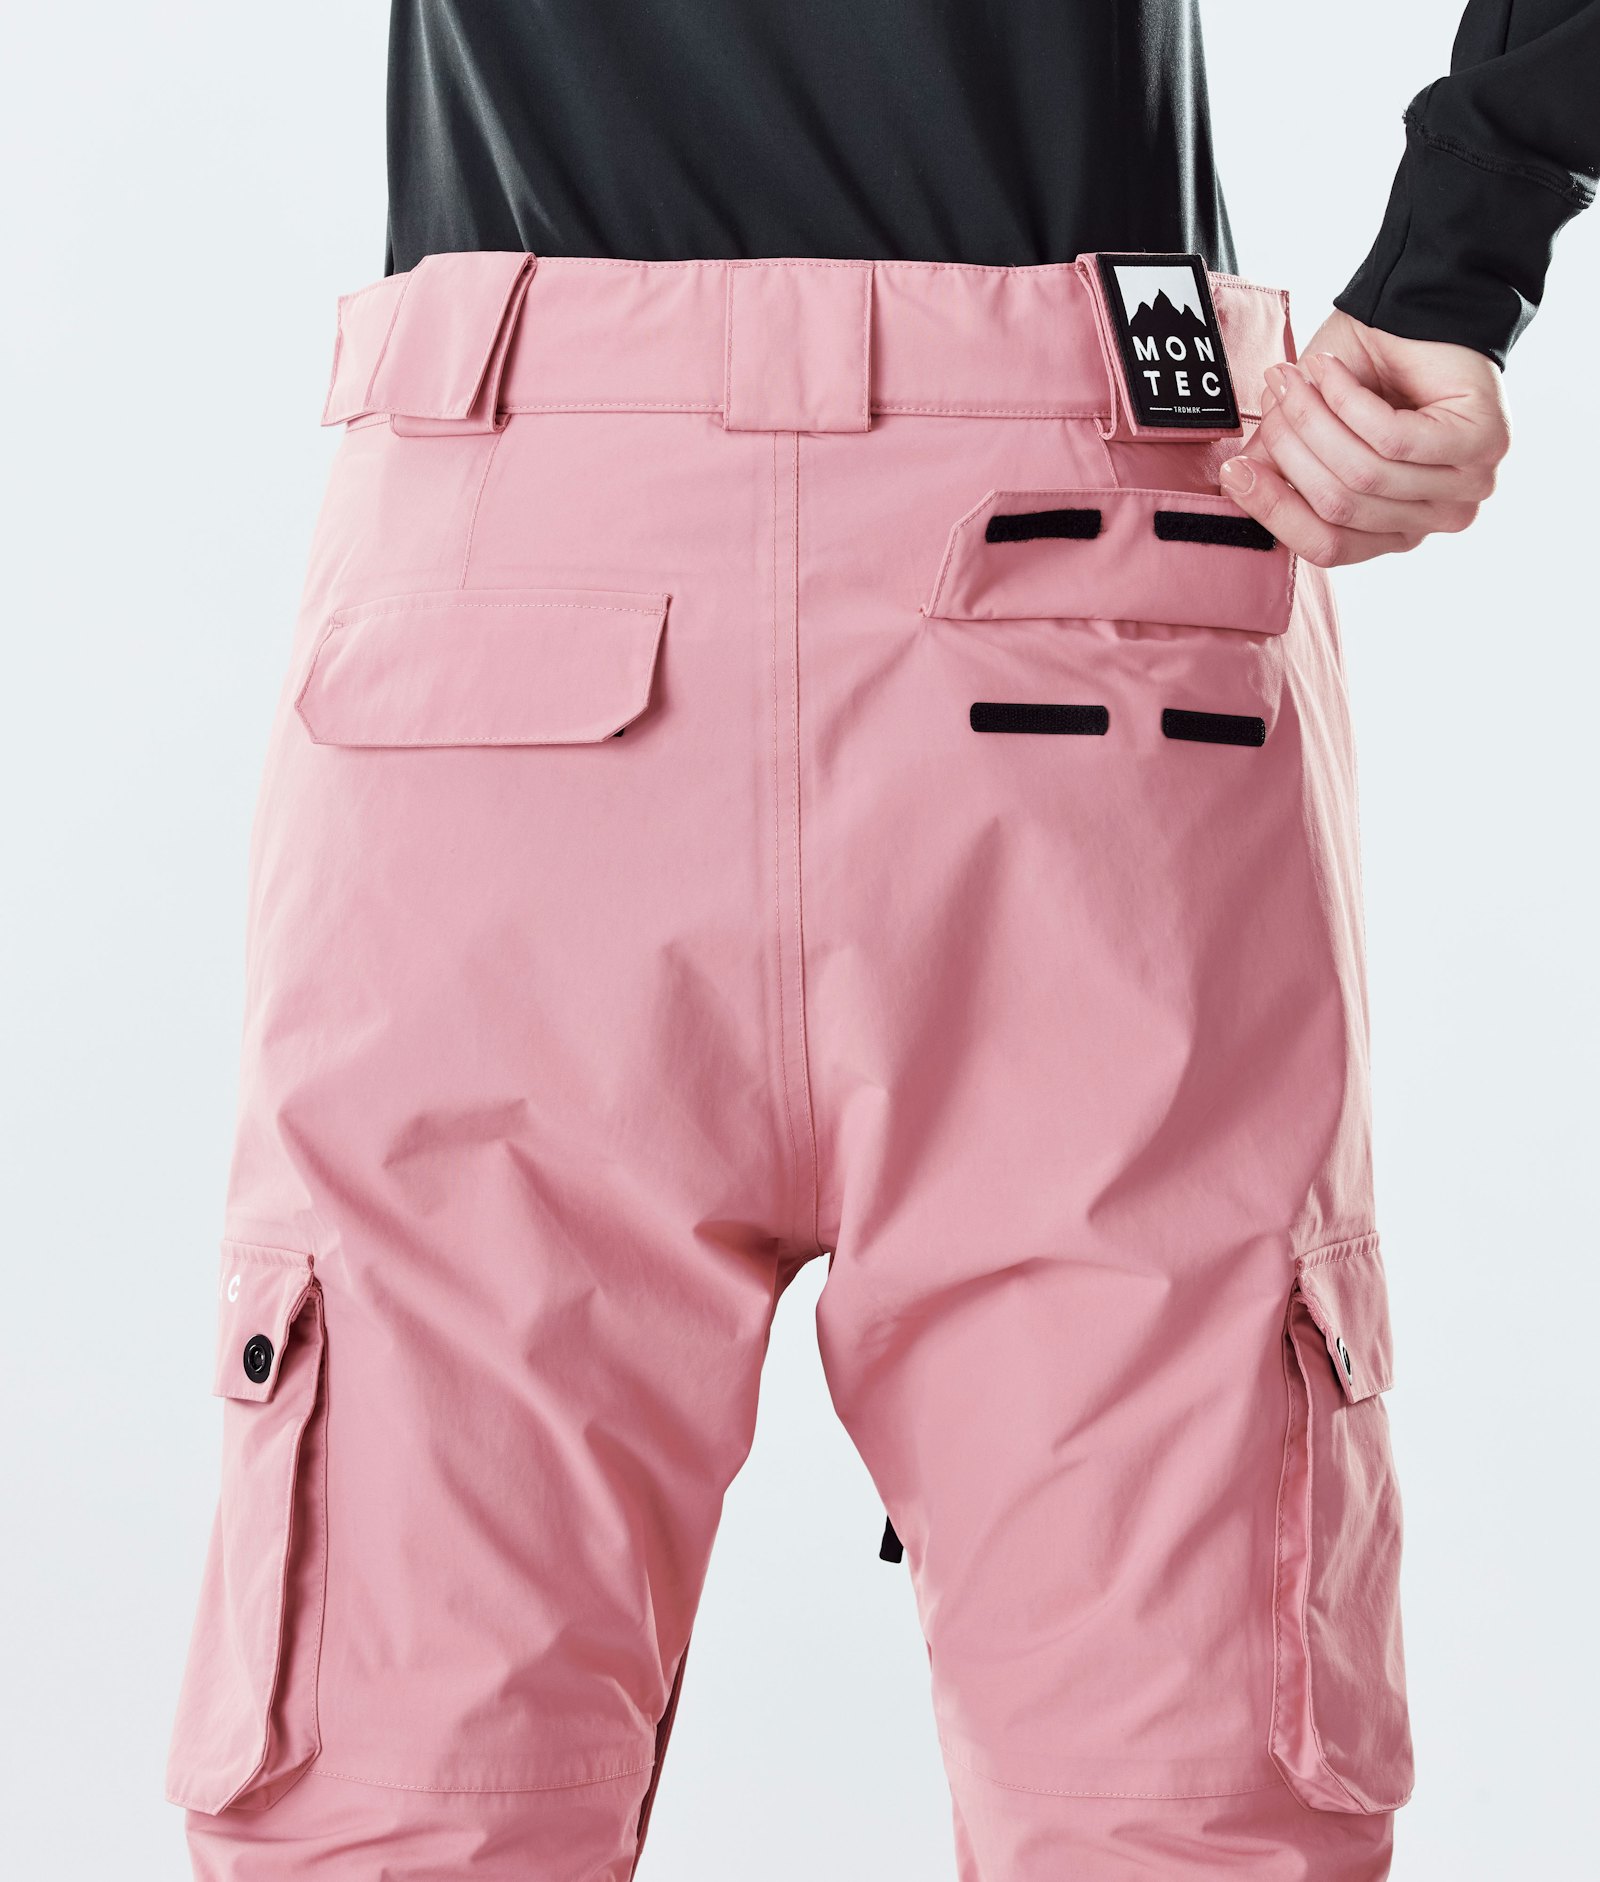 Montec Doom W 2020 Spodnie Snowboardowe Kobiety Pink